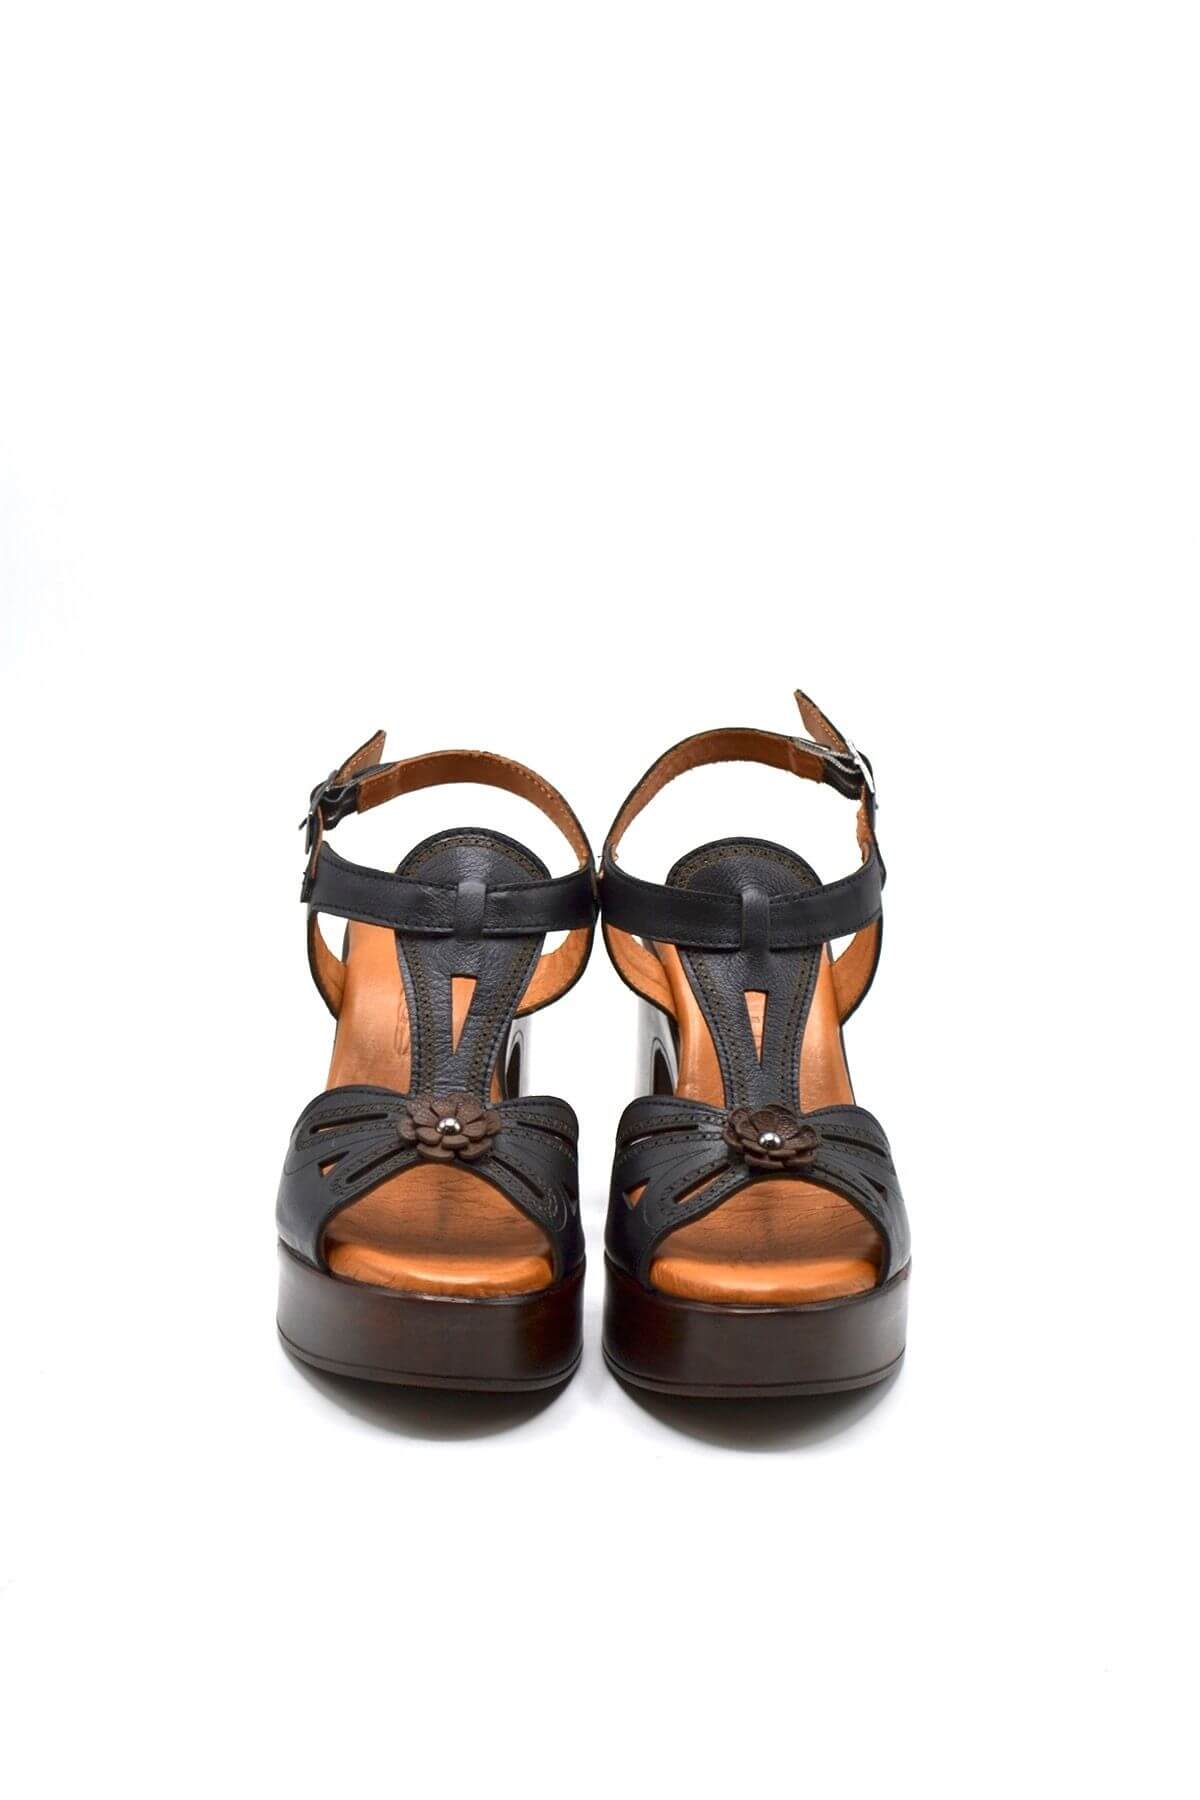 Kadın Apartman Topuk Deri Sandalet Siyah 2217006Y - Thumbnail